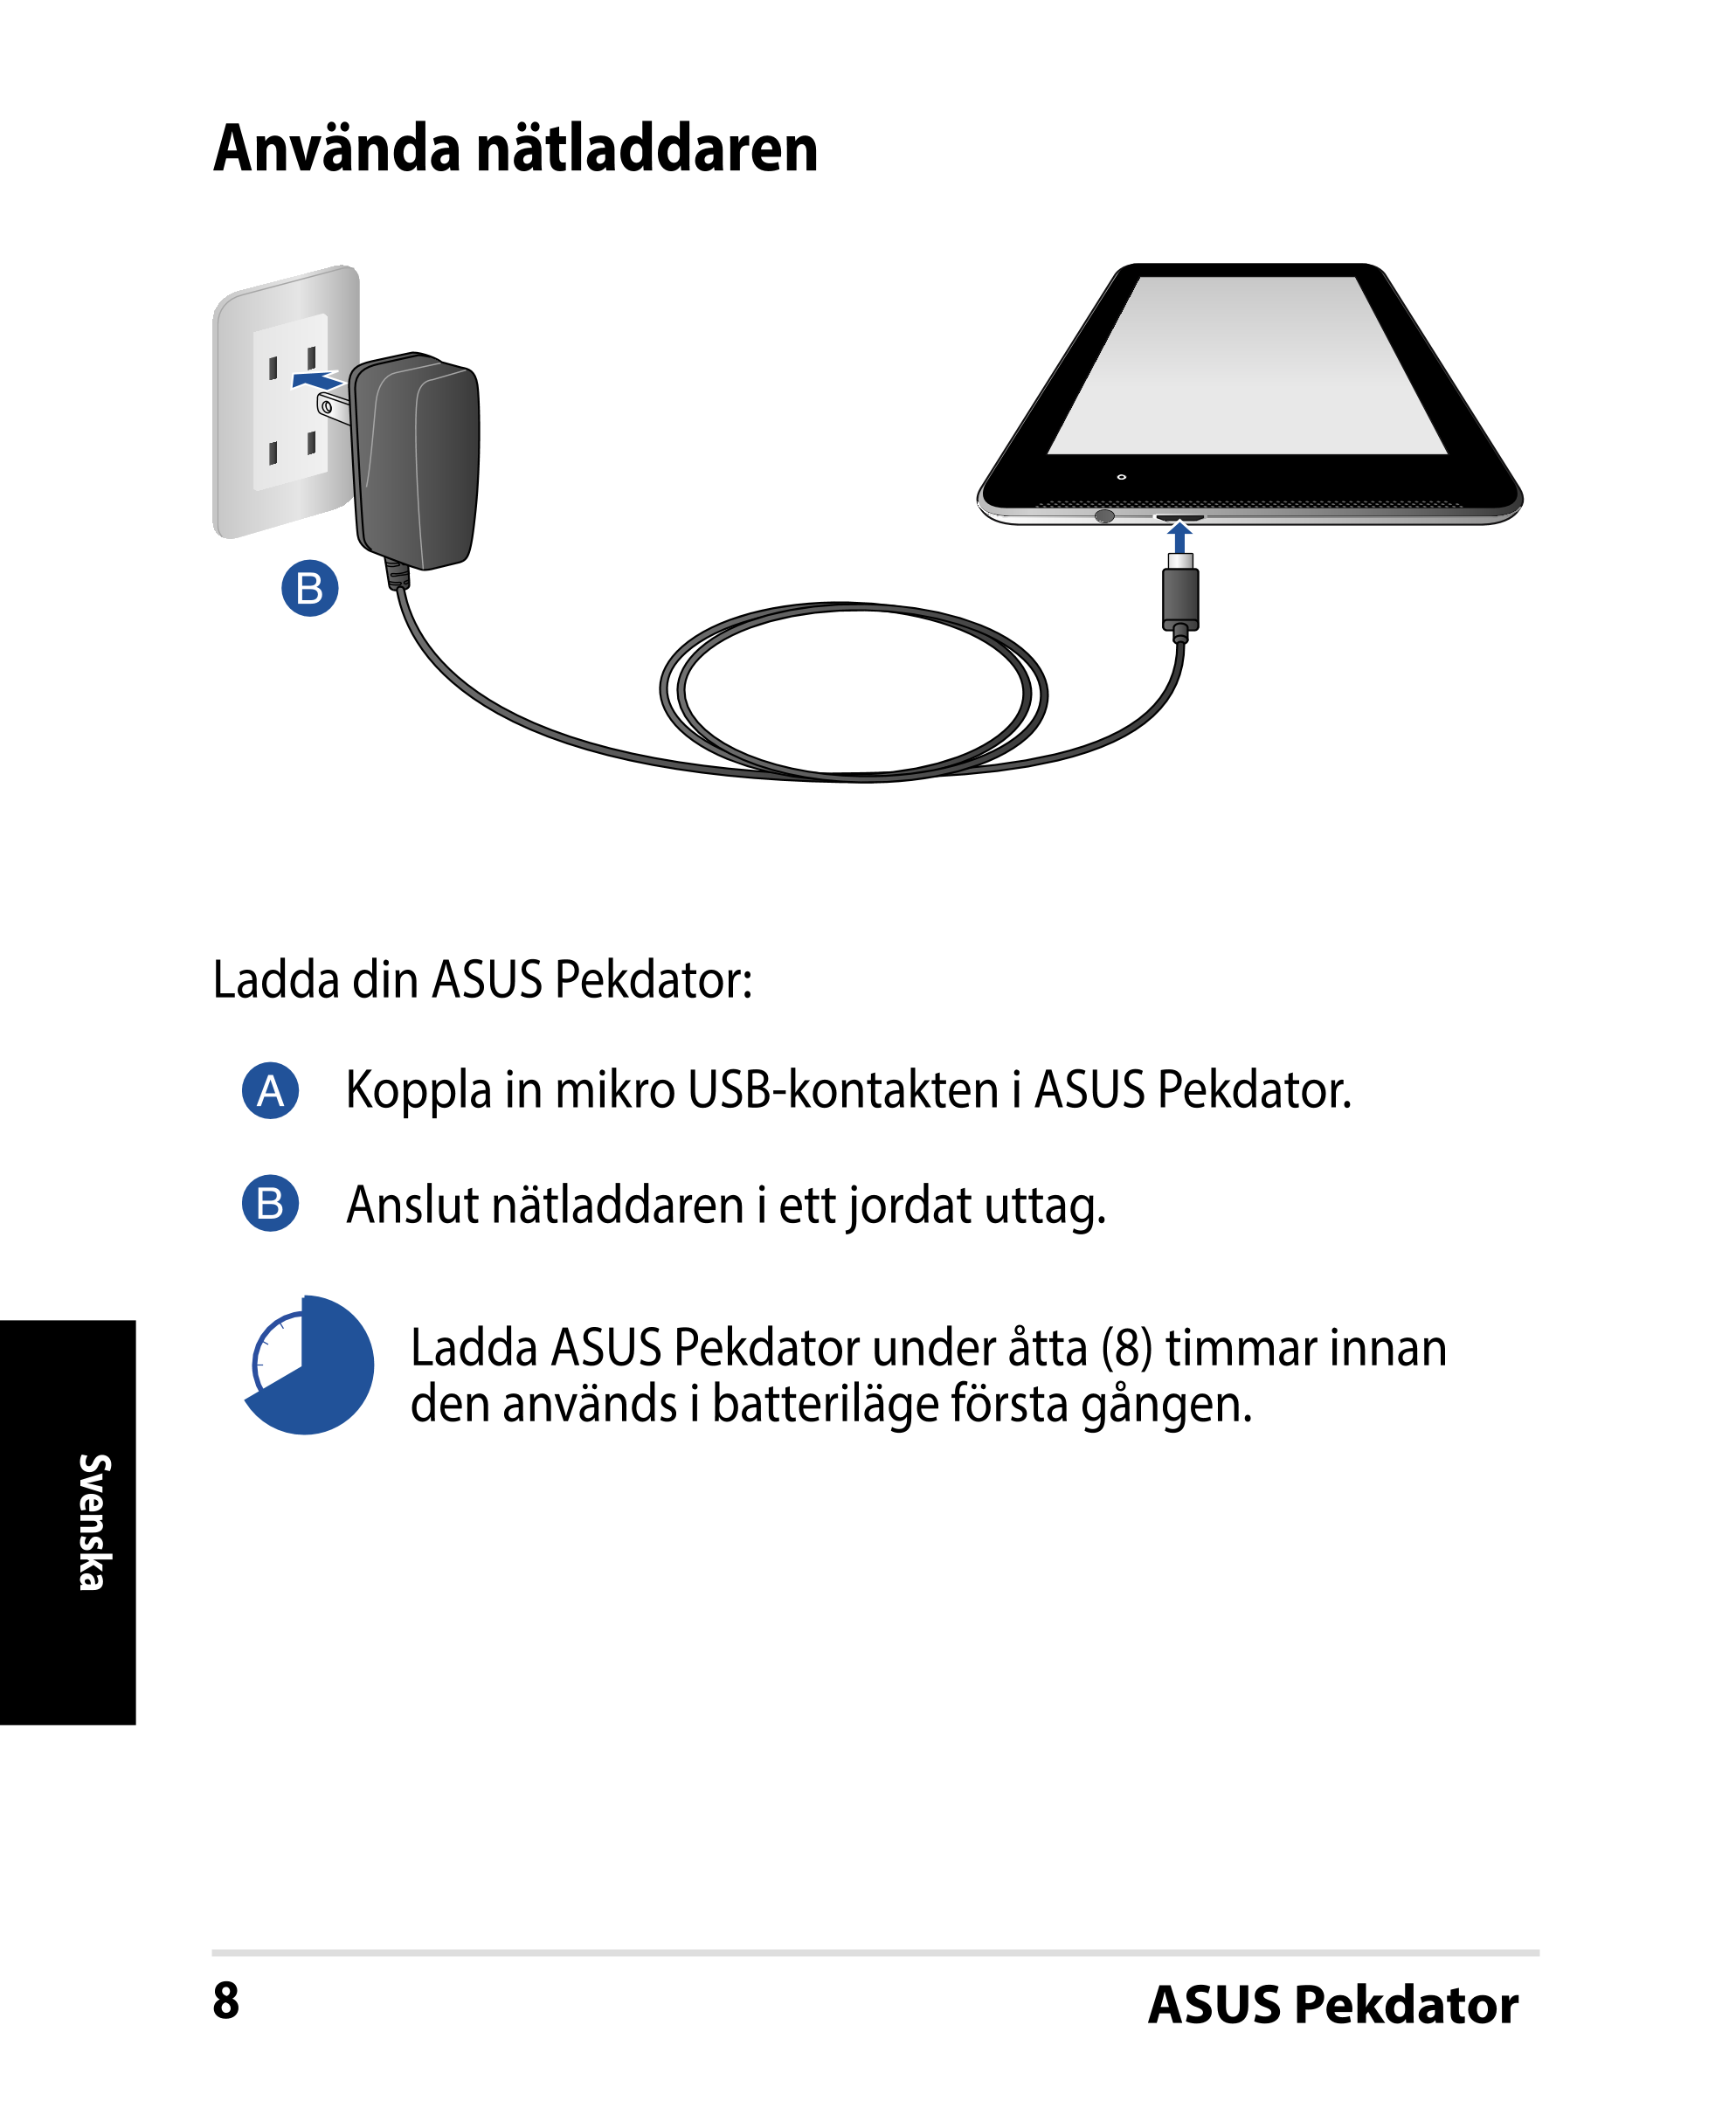 Använda nätladdaren
Ladda din ASUS Pekdator:
Koppla in mikro USB-kontakten i ASUS Pekdator.
Anslut nätladdaren i ett jordat utta